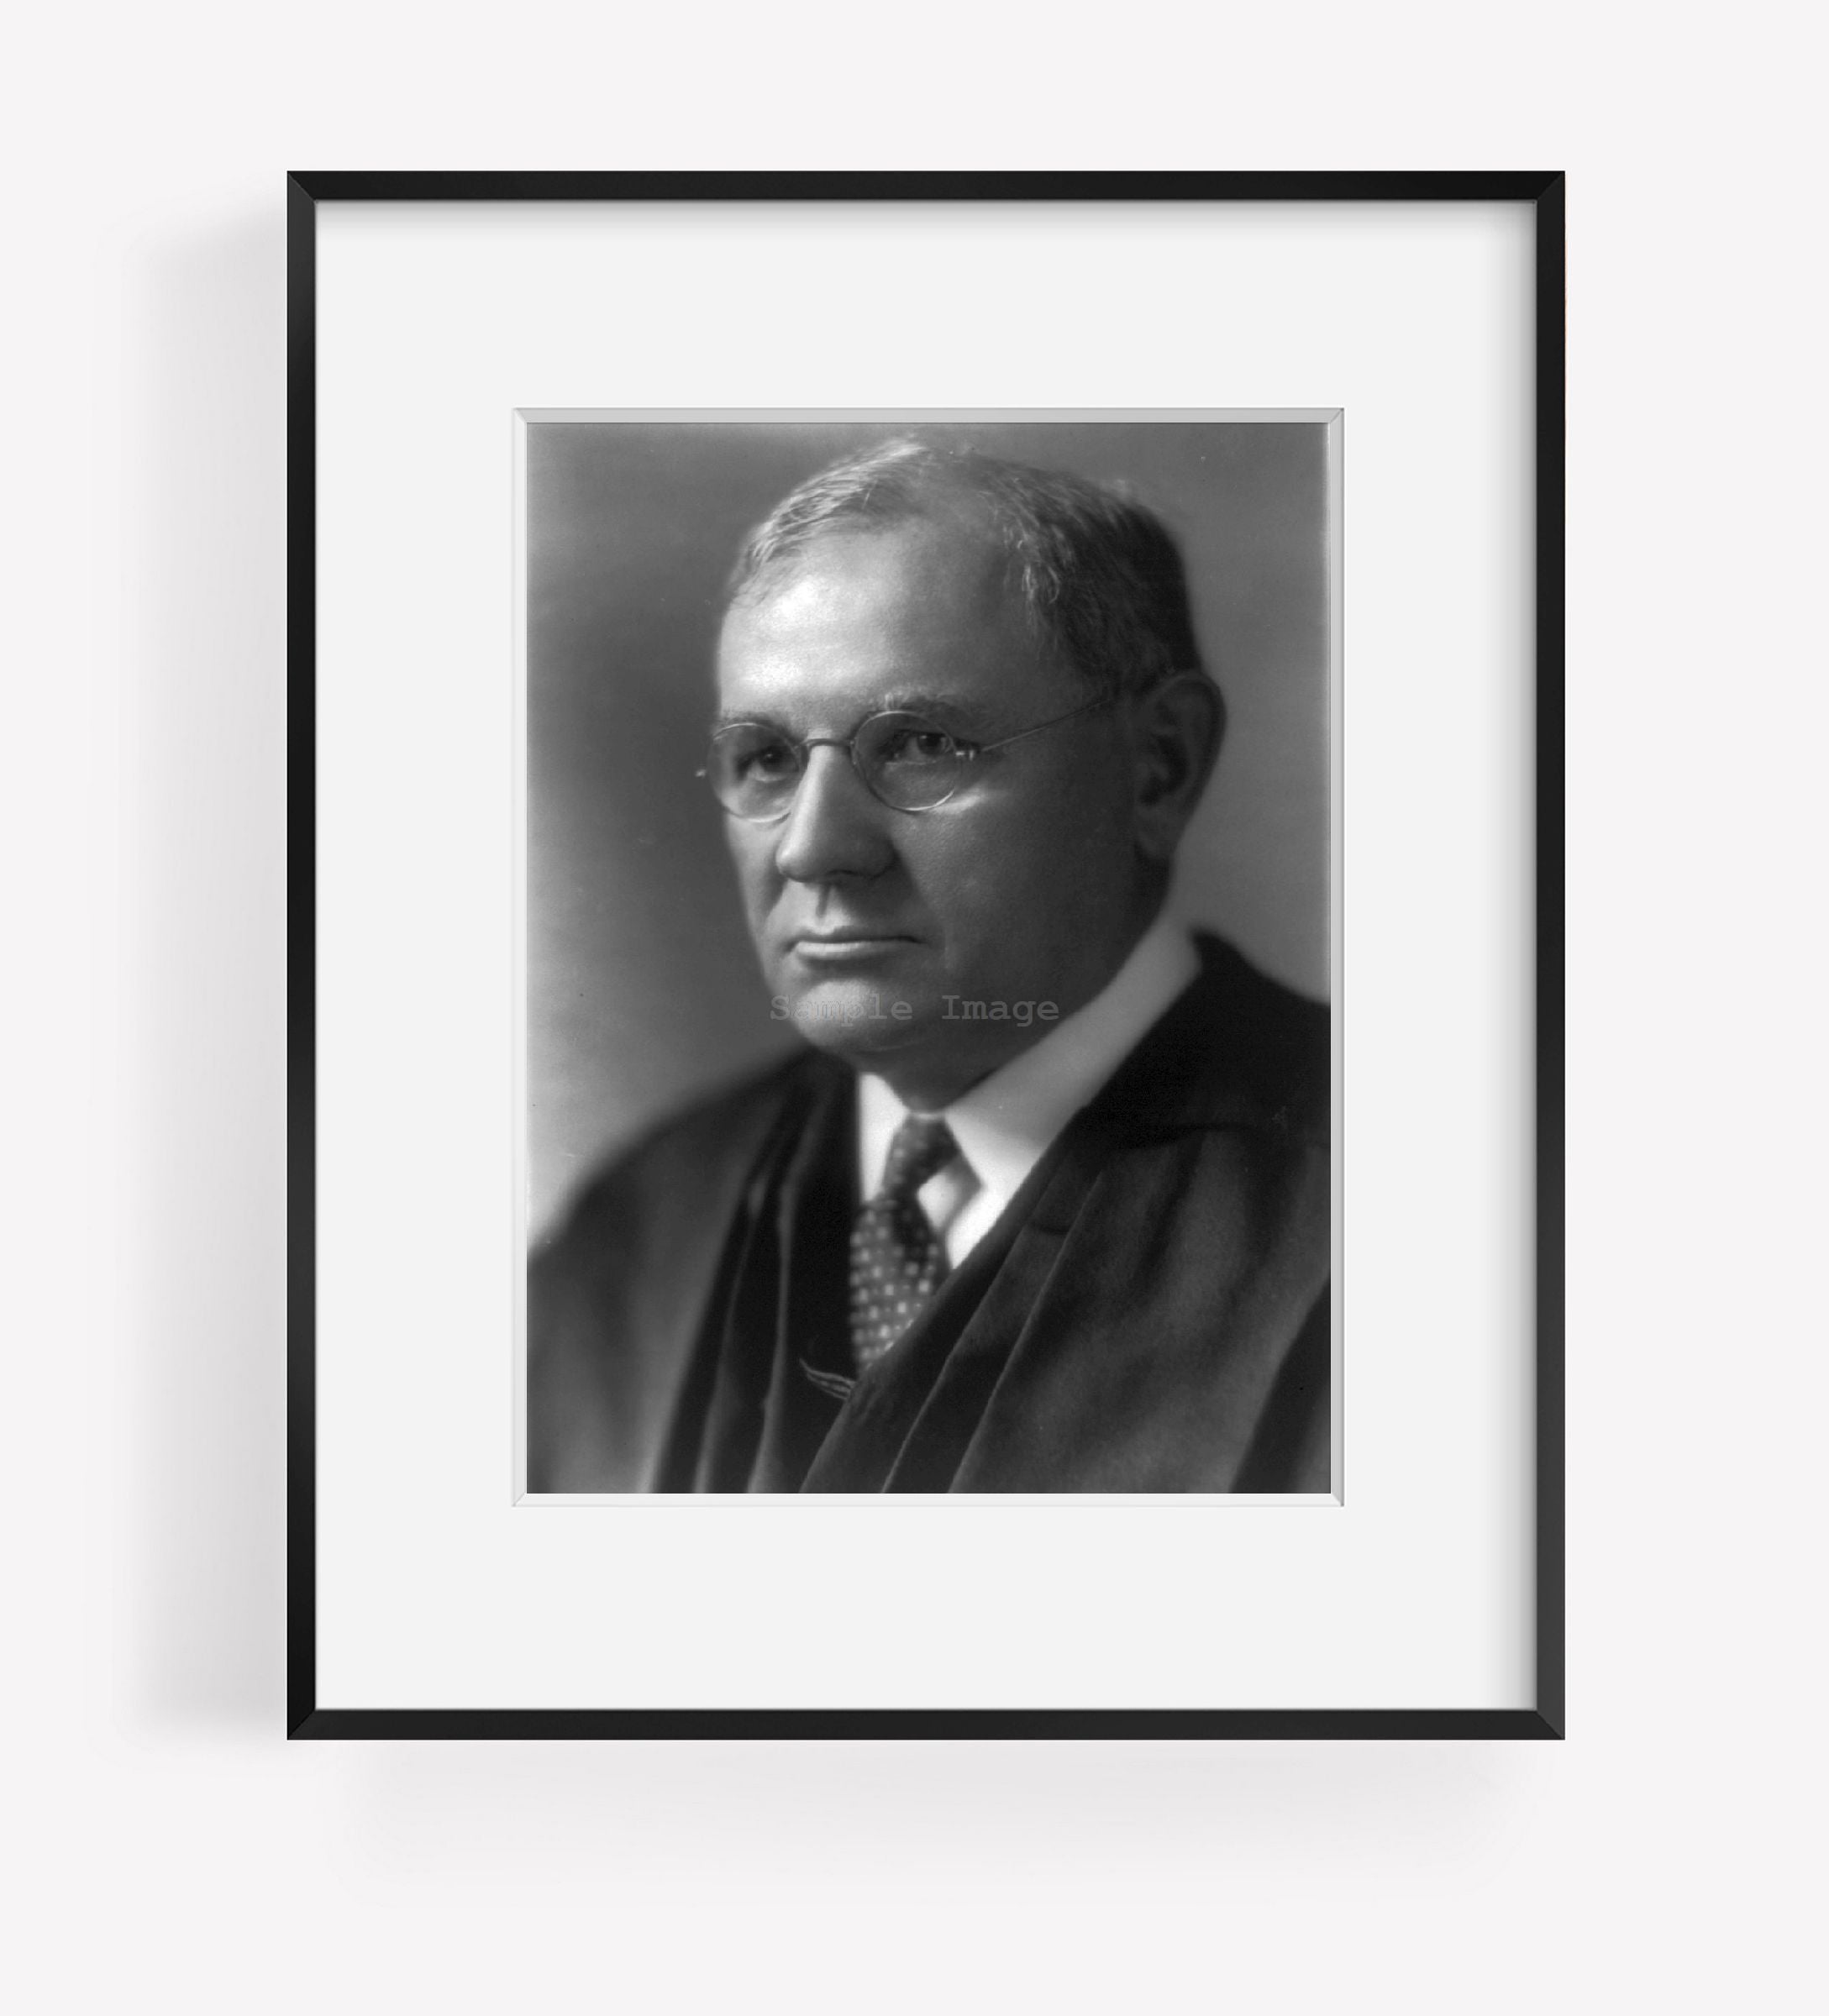 Photo: Pierce Butler, 1866-1939, American jurist, Democrat